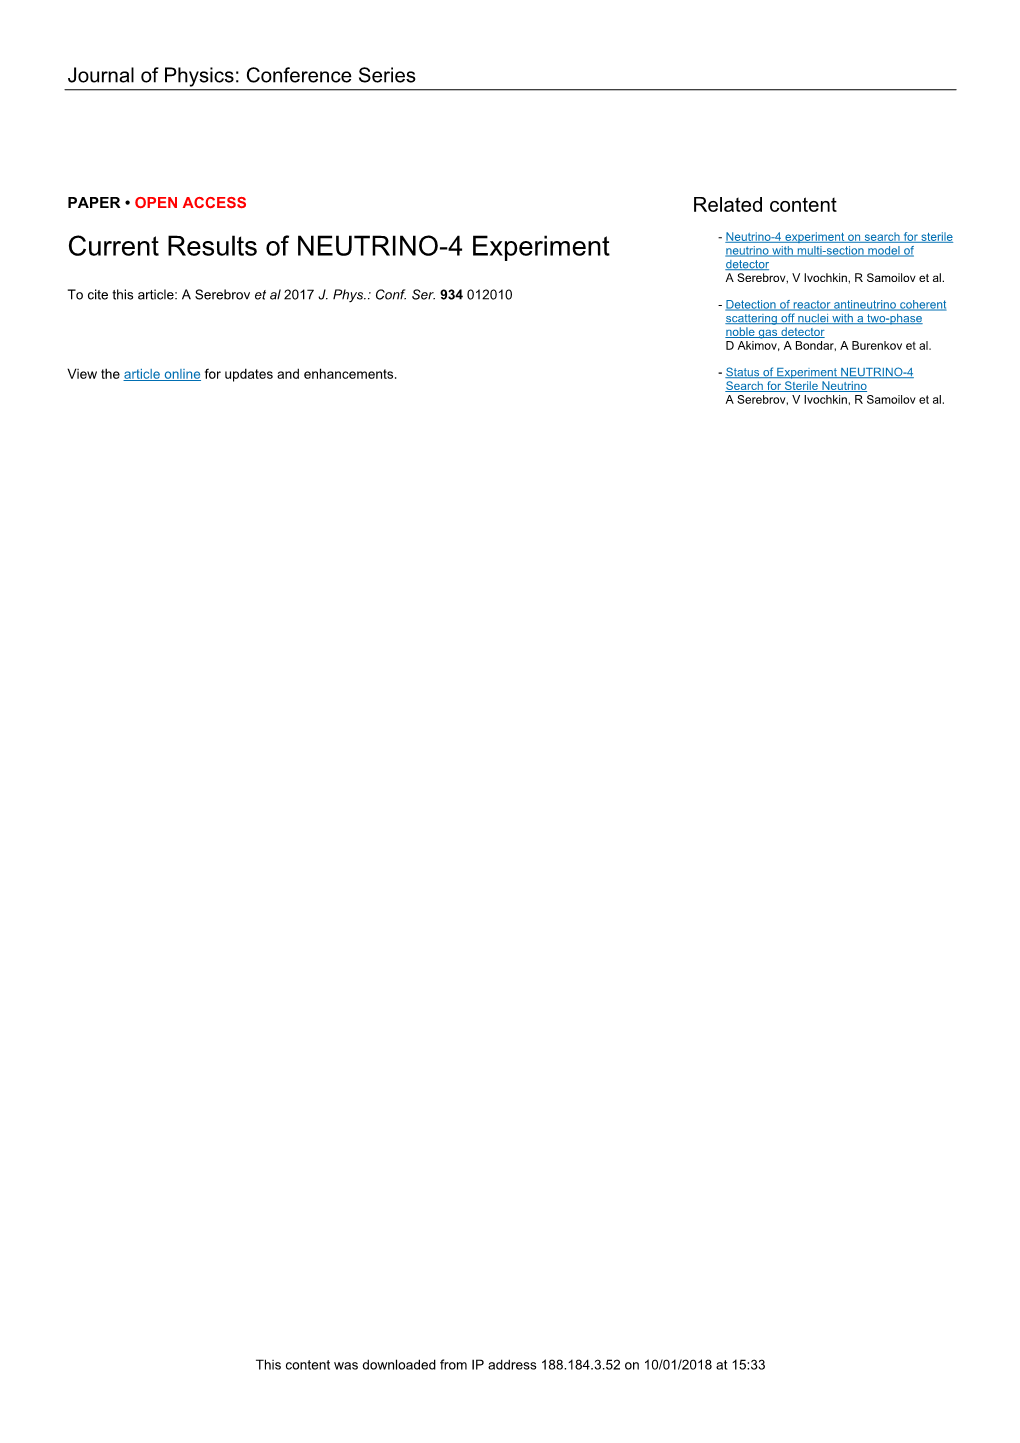 Current Results of NEUTRINO-4 Experiment Neutrino with Multi-Section Model of Detector a Serebrov, V Ivochkin, R Samoilov Et Al